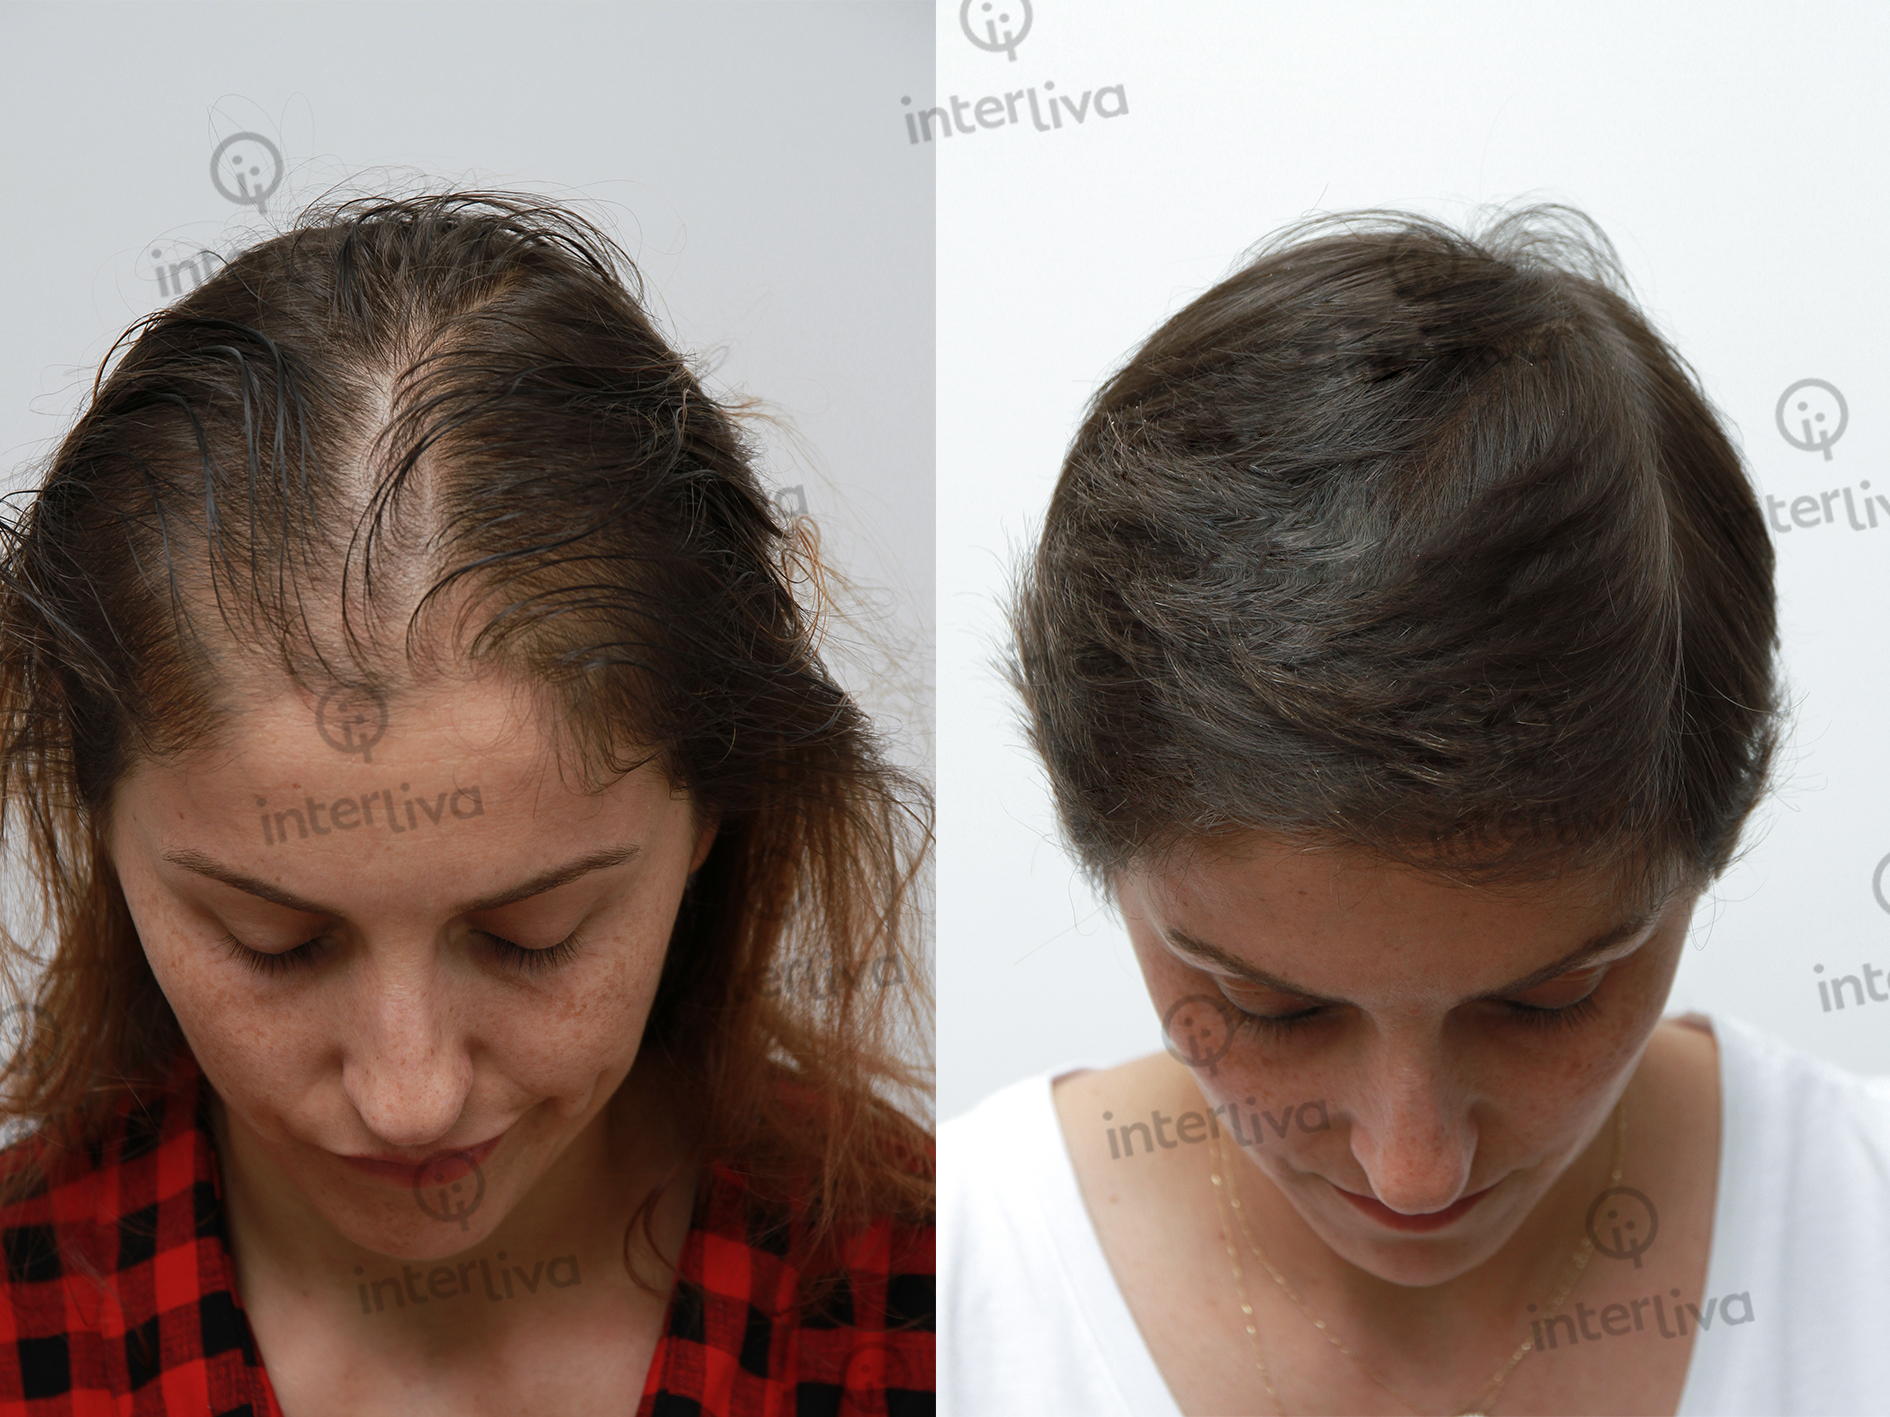 FUE Hair Transplant - Interliva